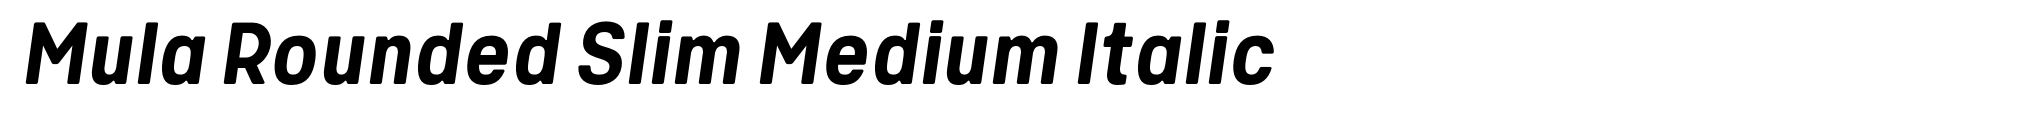 Mula Rounded Slim Medium Italic image